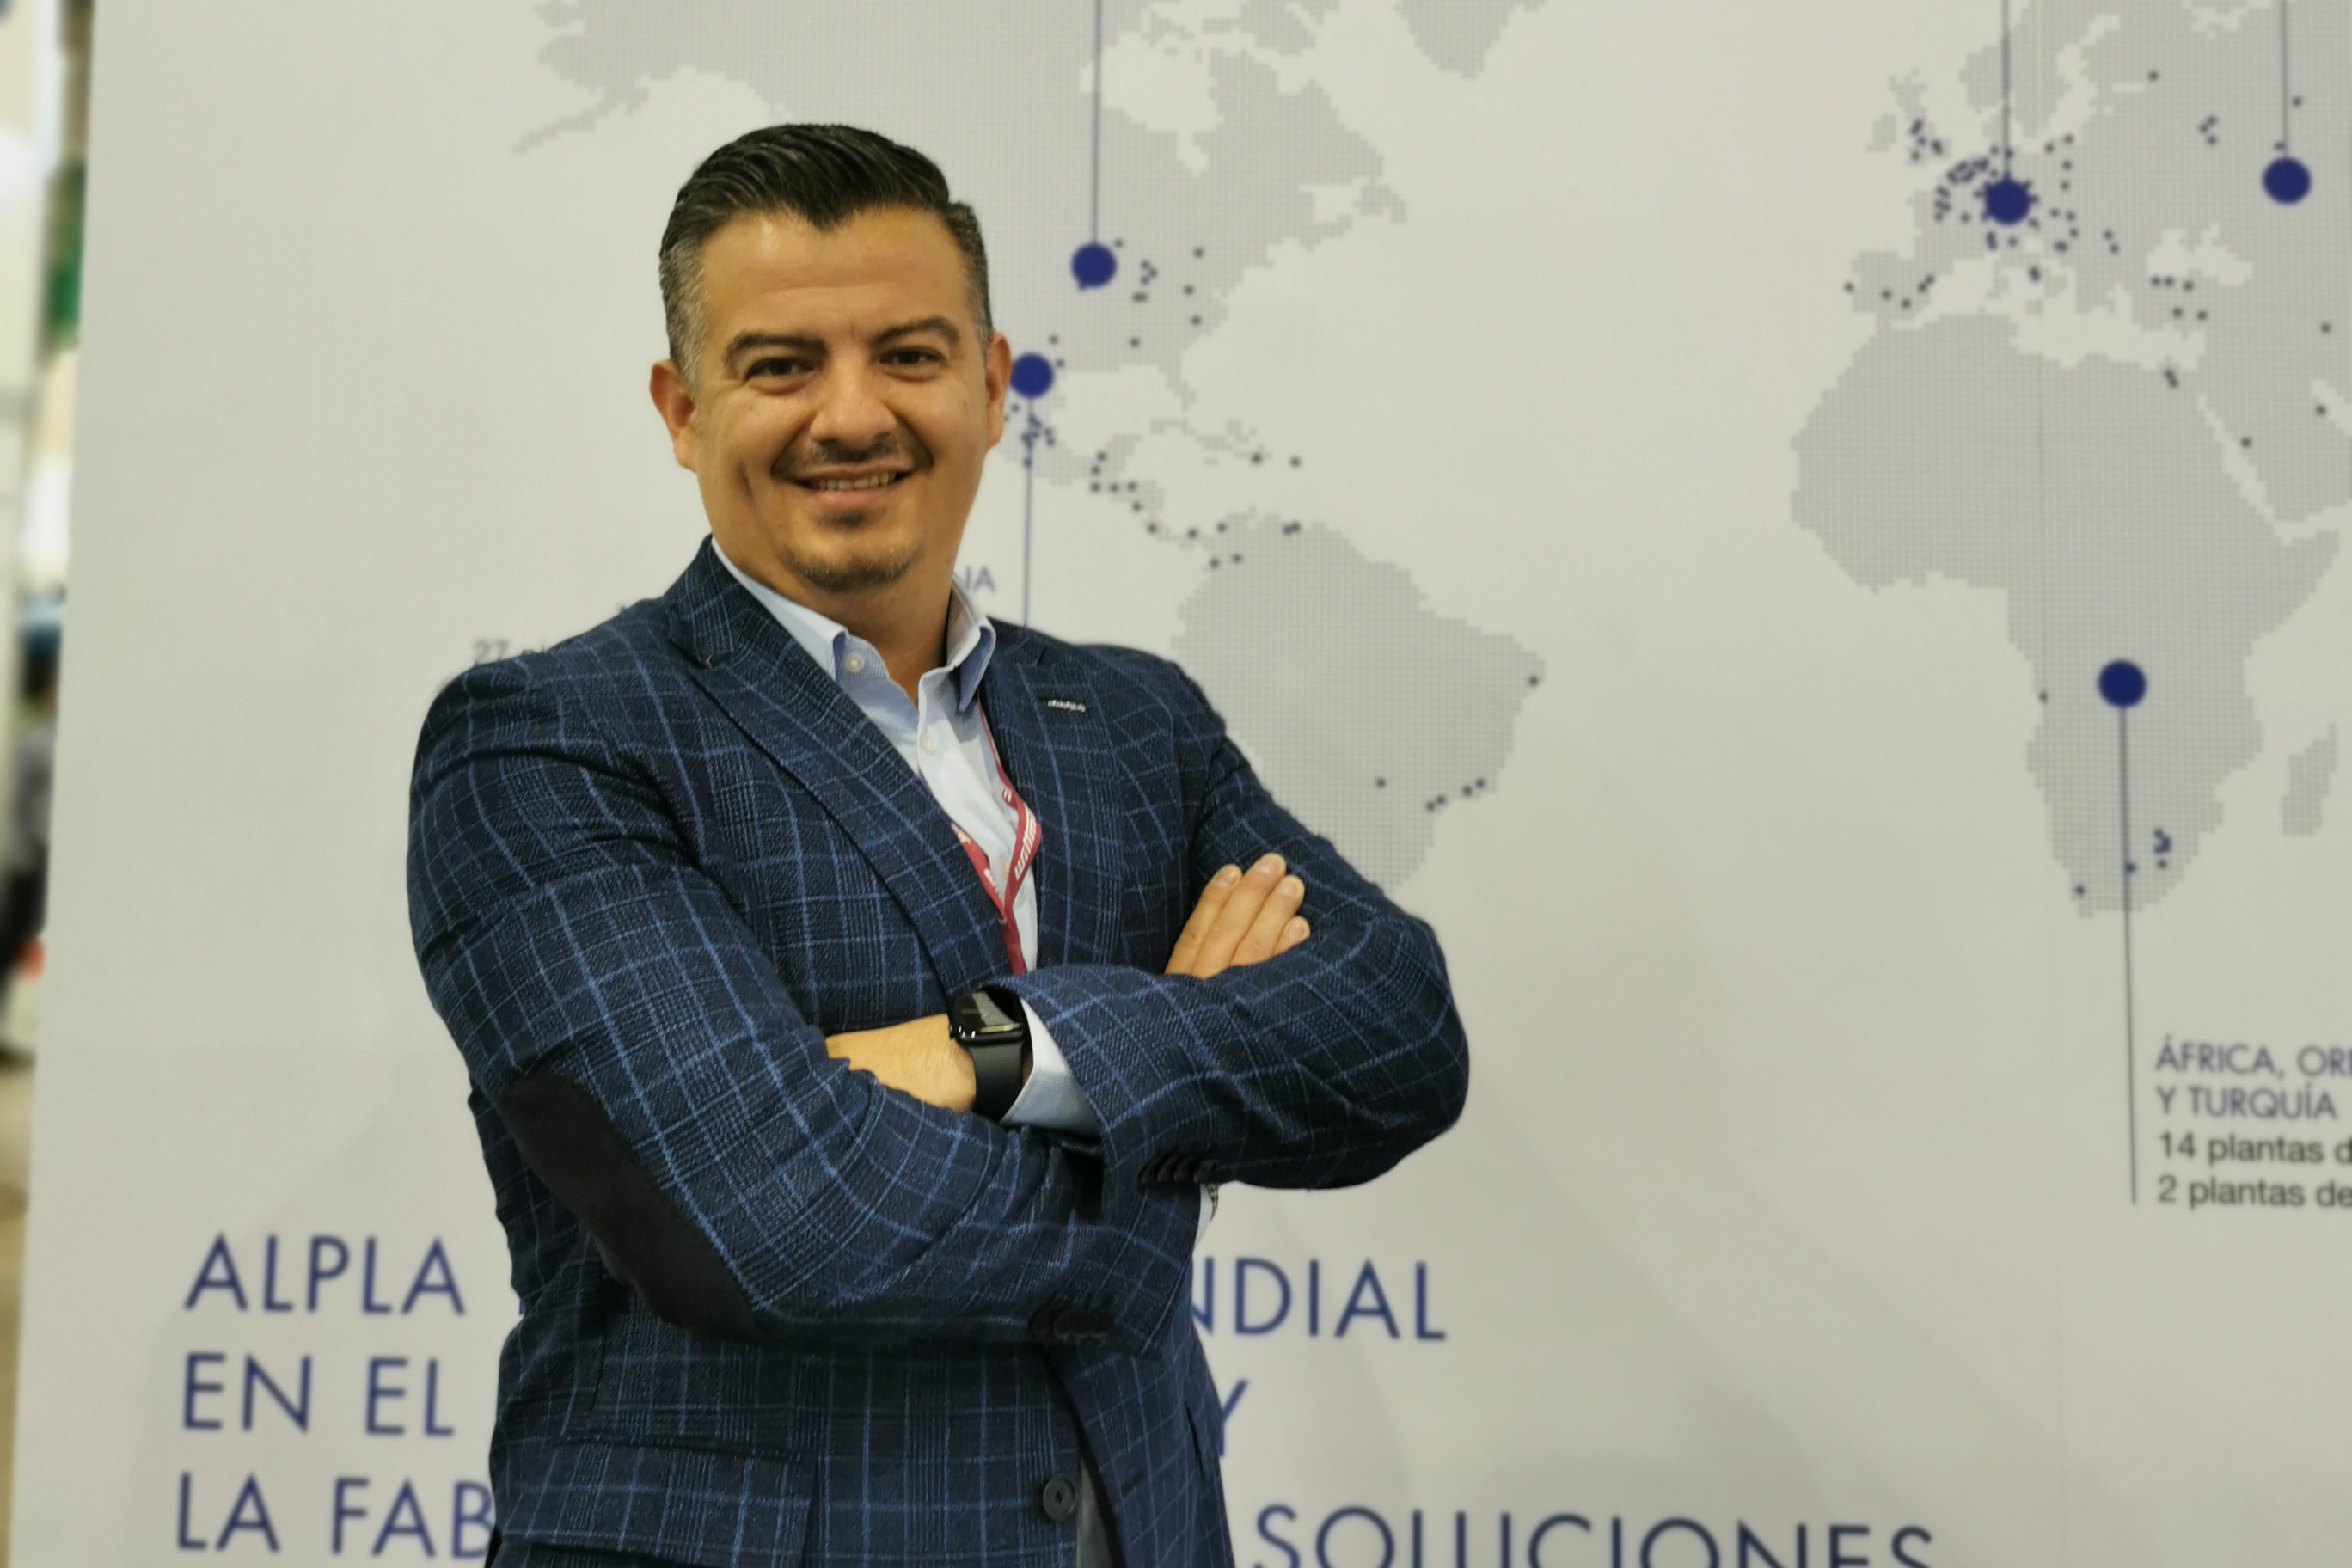 Humberto Quiroz, Regional Head of Procurement para Alpla México, Centroamérica y el Caribe.